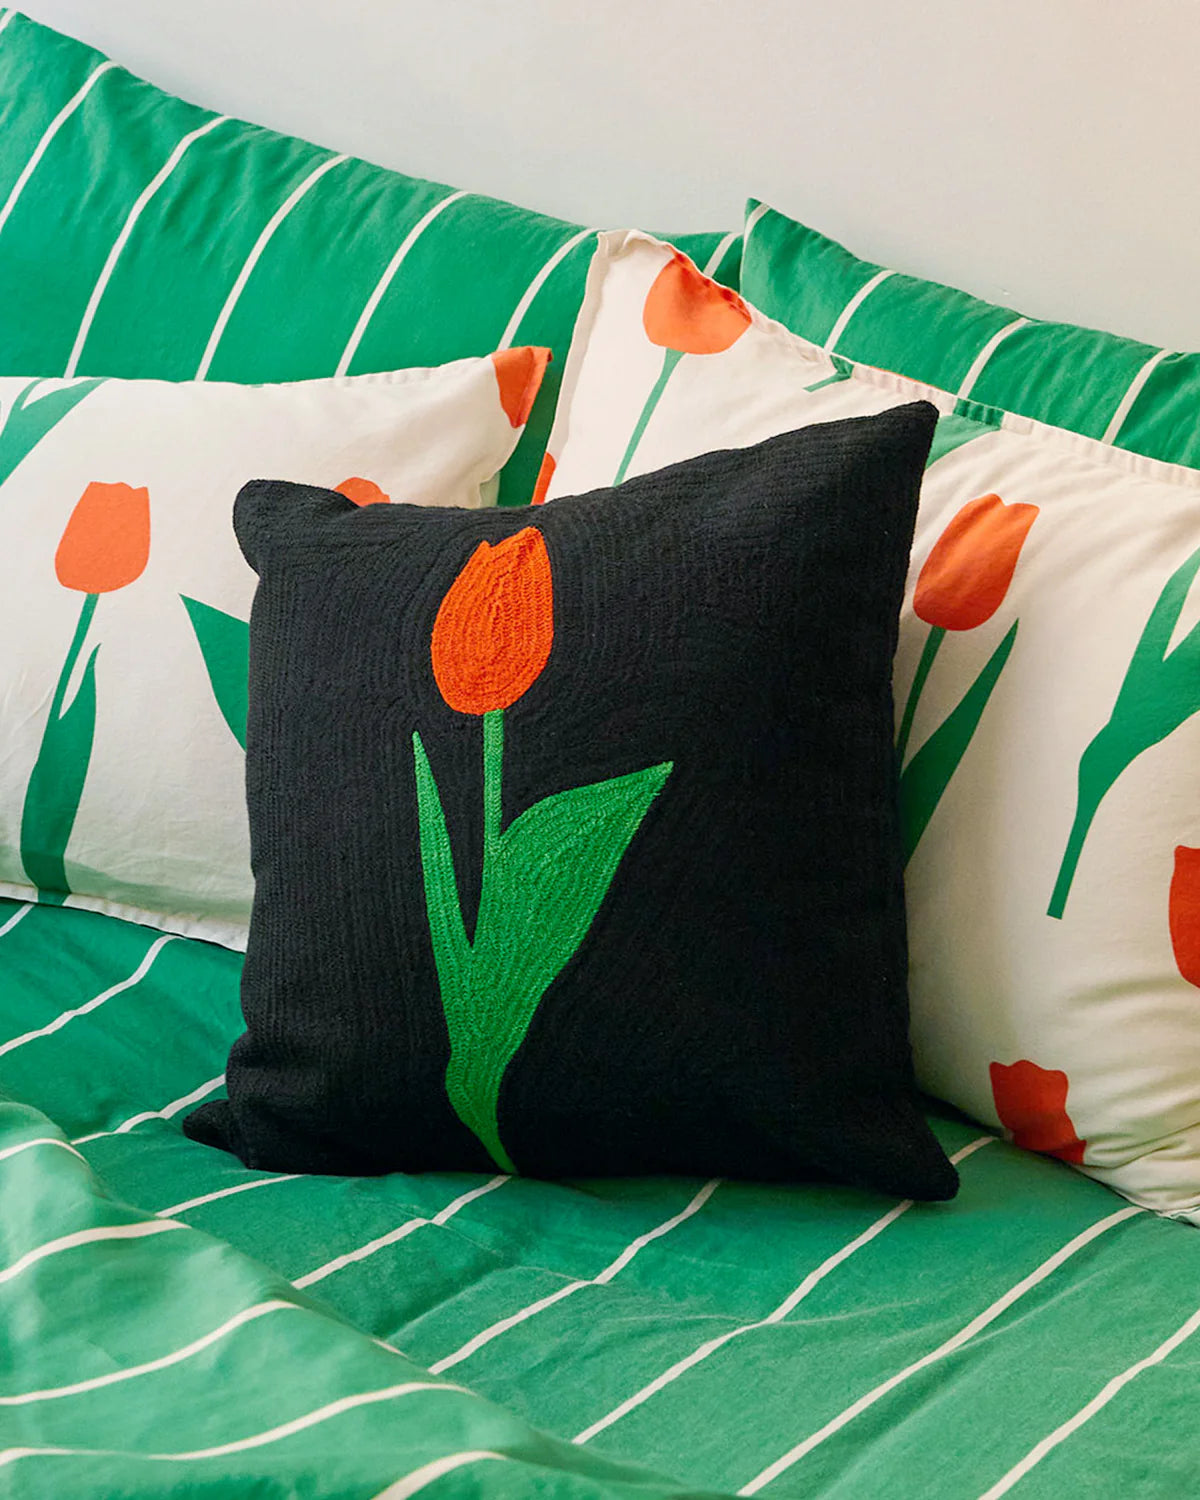 coussin noir avec une tulipe rouge et verte brodé. Le coussin est posé sur un lit avec des draps rayés verts et blancs et d'autres coussins tulipe blanc rouge et vert